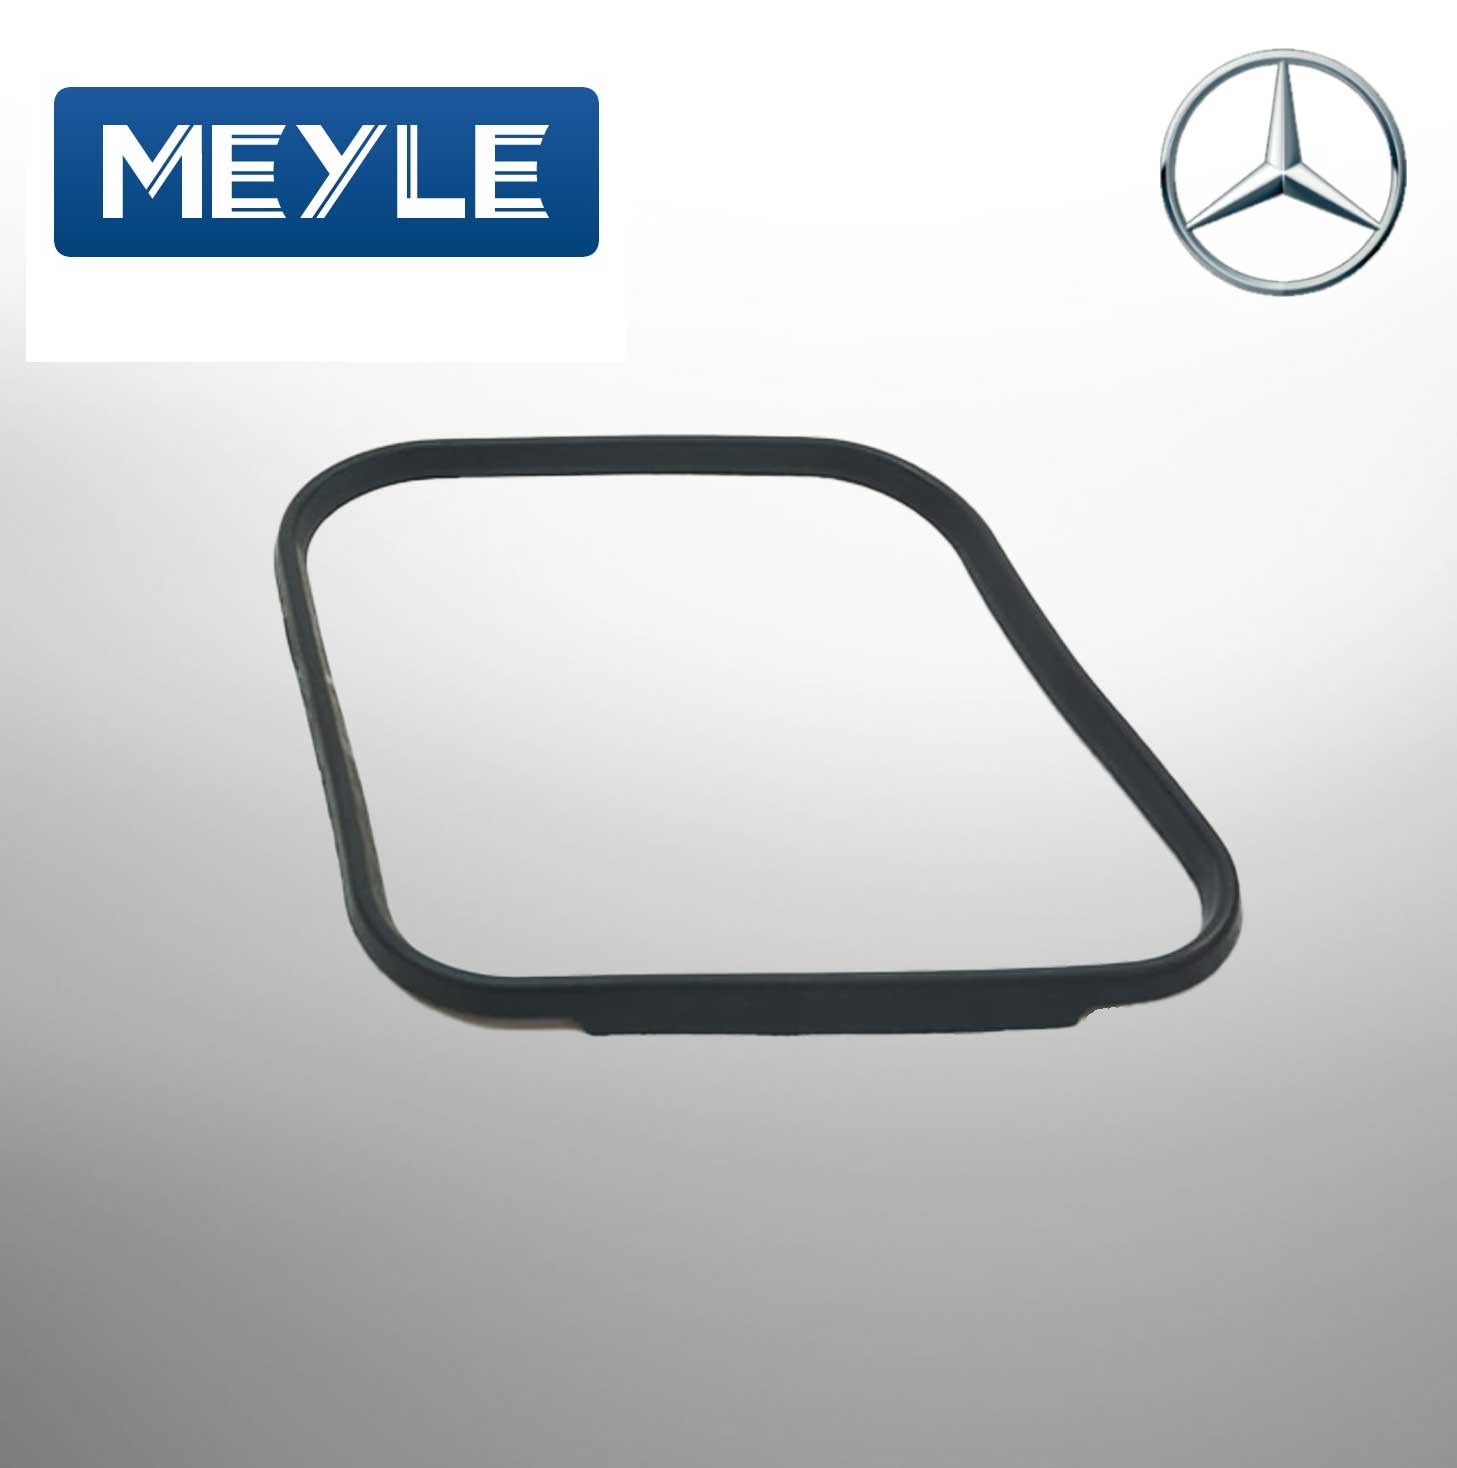 MEYLE GEAR CRANKCASE GASKET FOR Mercedes Benz 1152711680